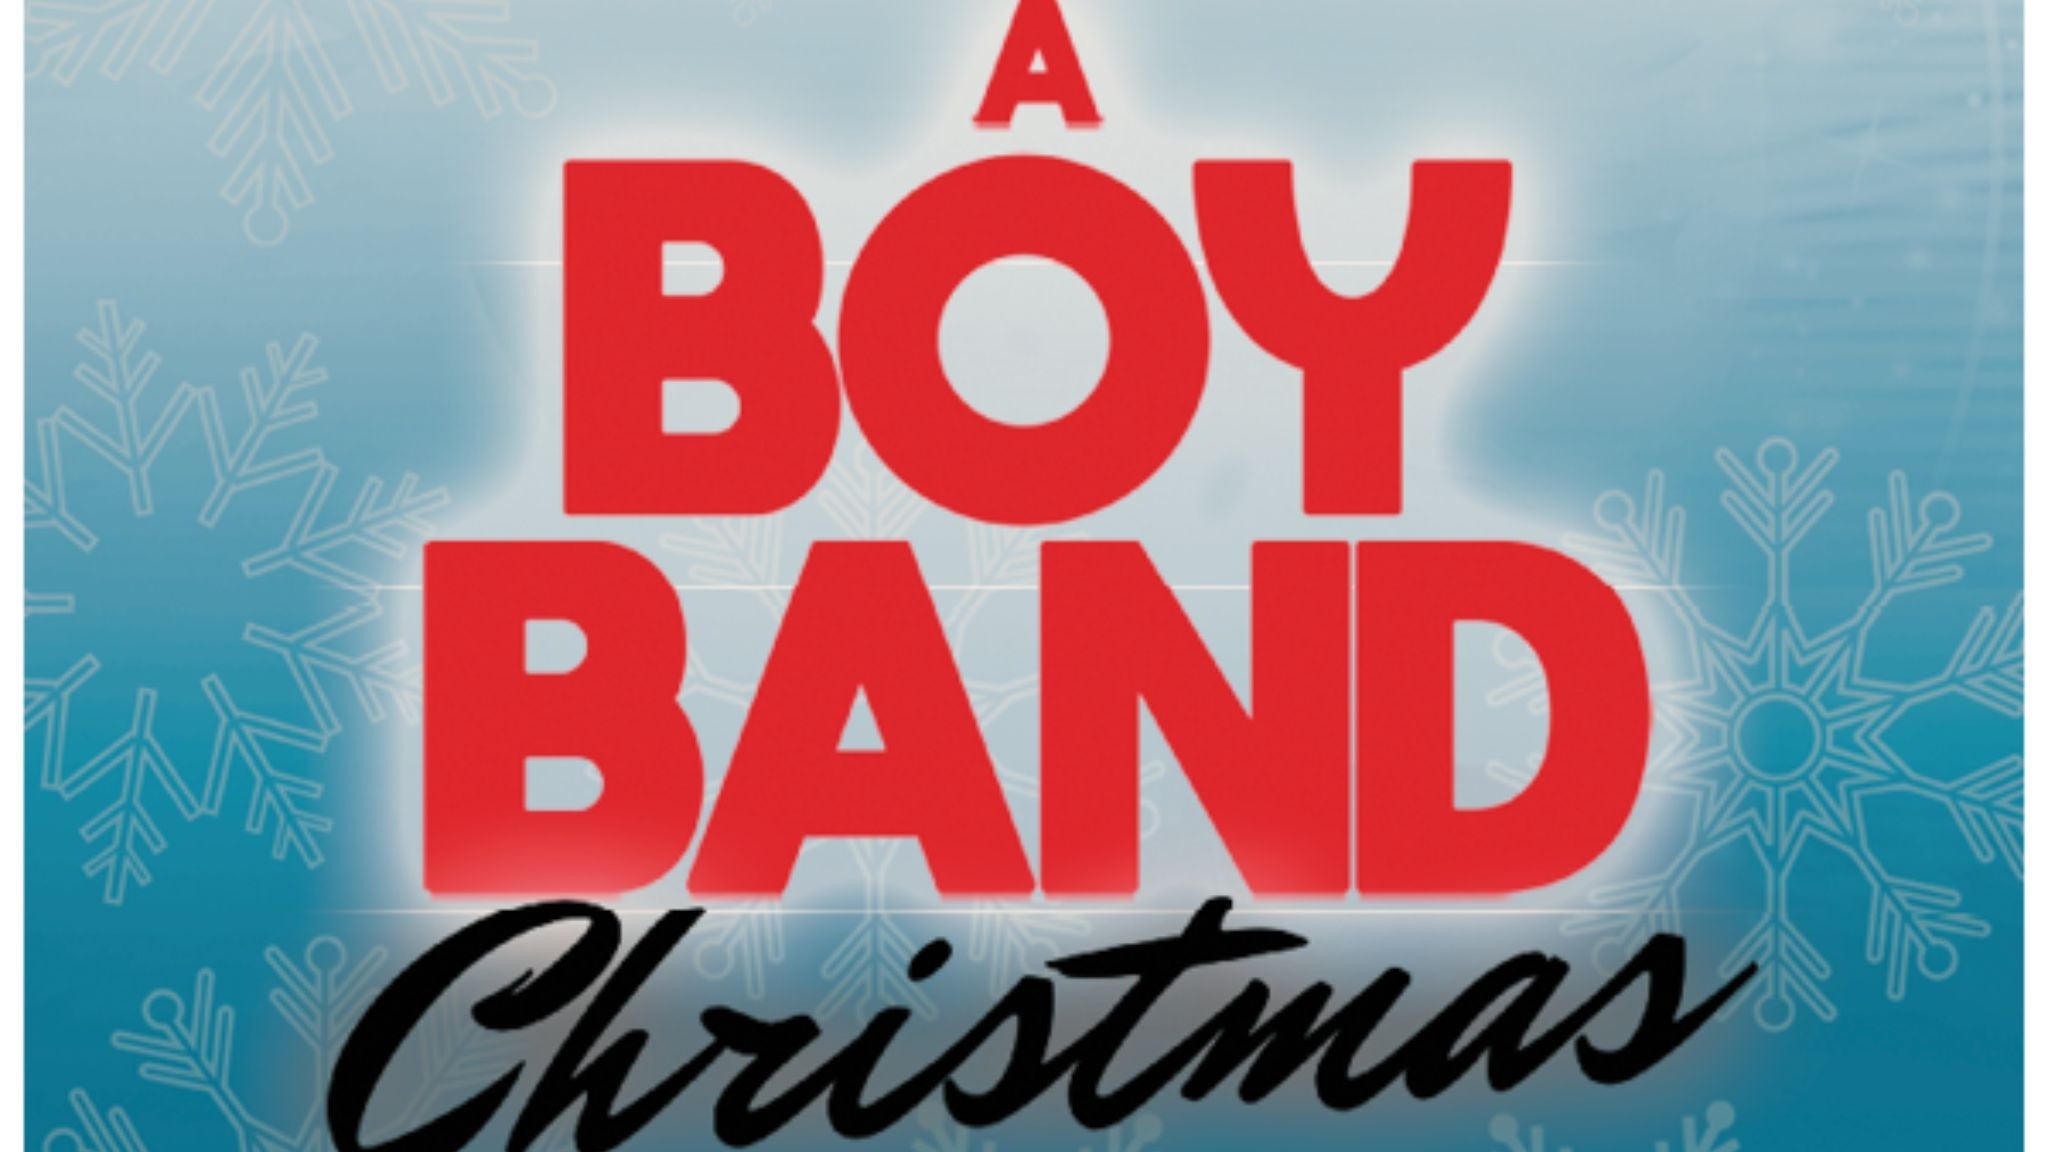 A Boy Band Christmas